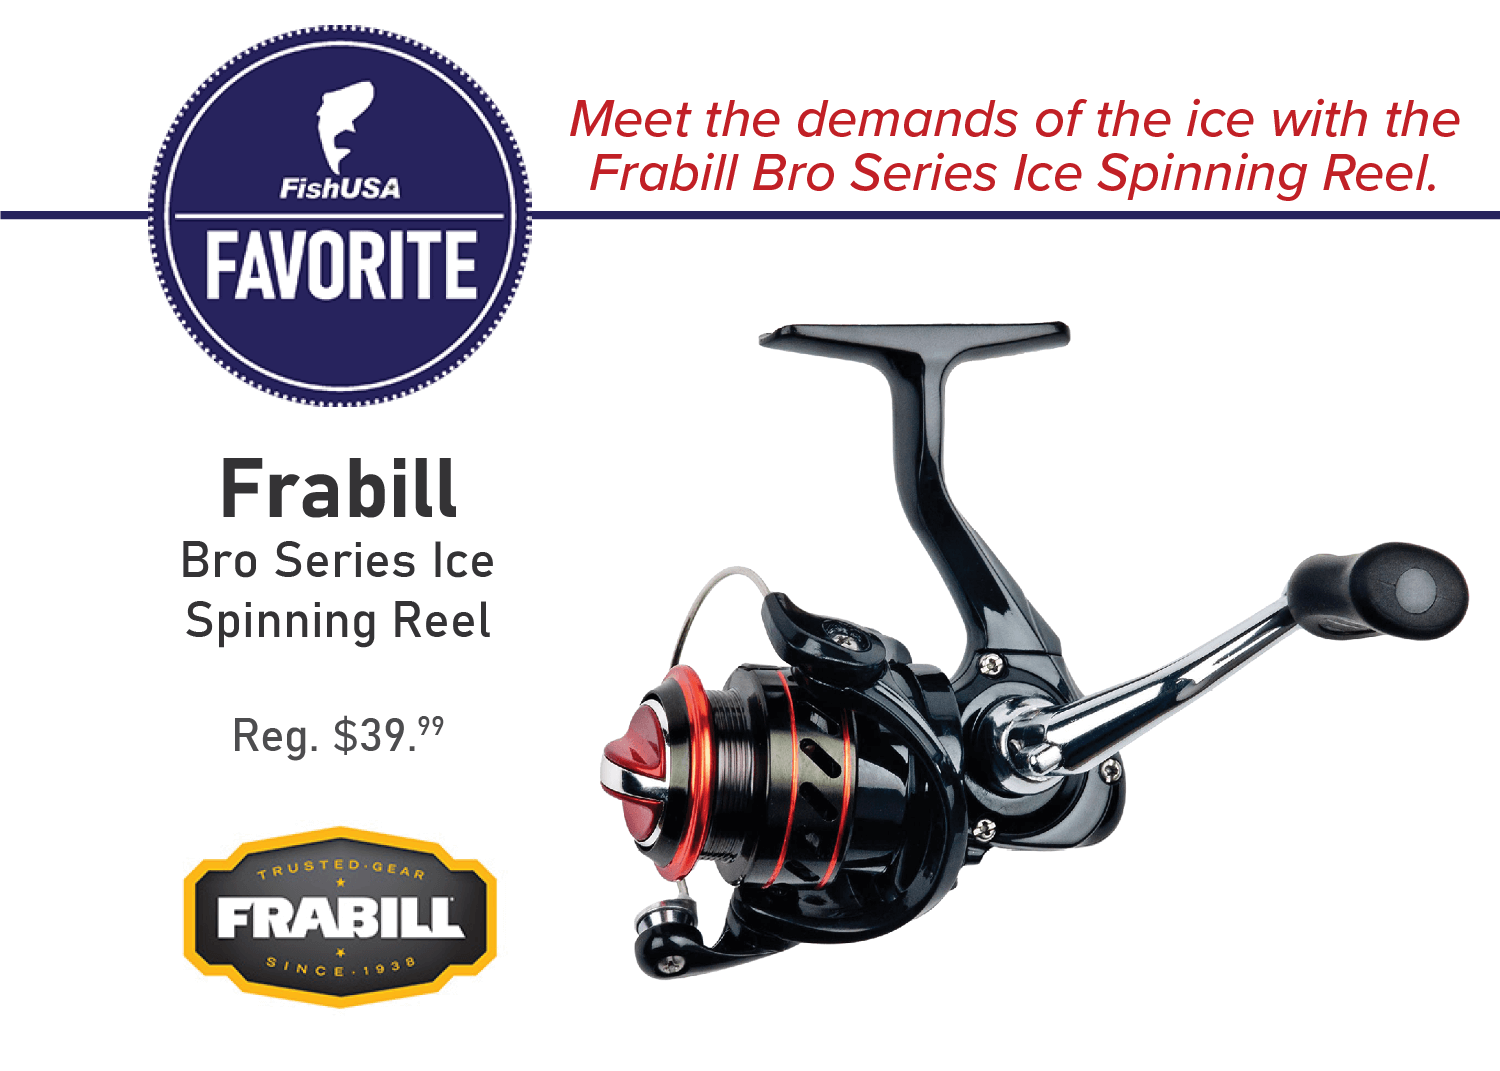 Frabill Bro Series Ice Spinning Reel